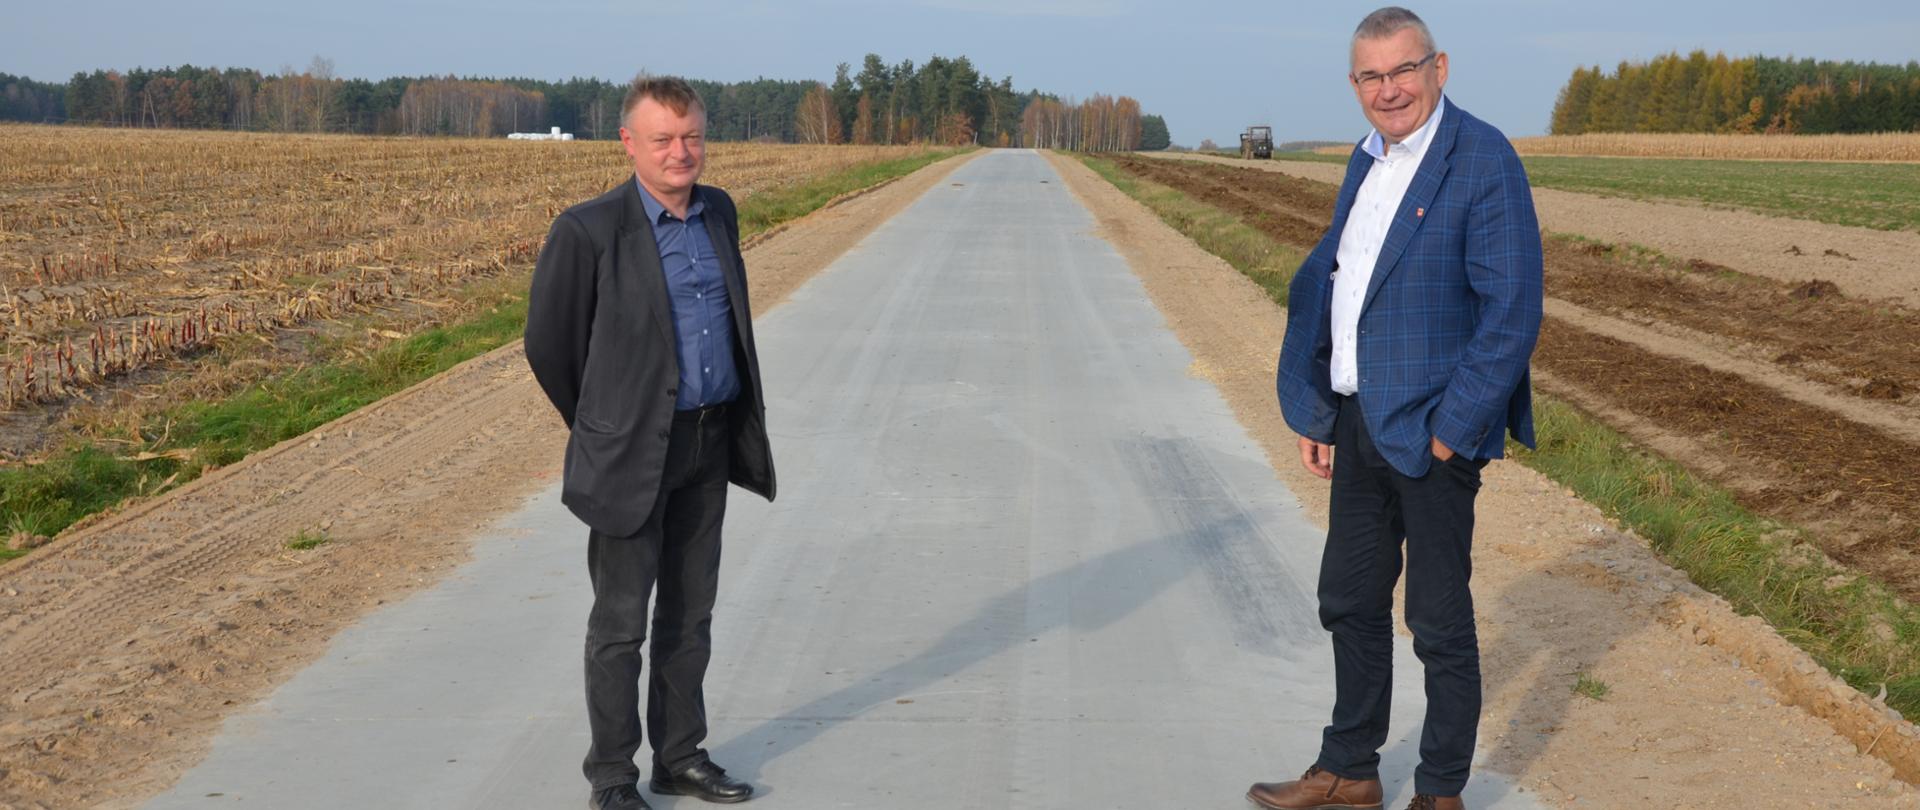 Od lewej Piotr Kijowski Szef Doradztwa Technicznego SPC oraz Wójt Gminy Brańsk na drodze betonowej